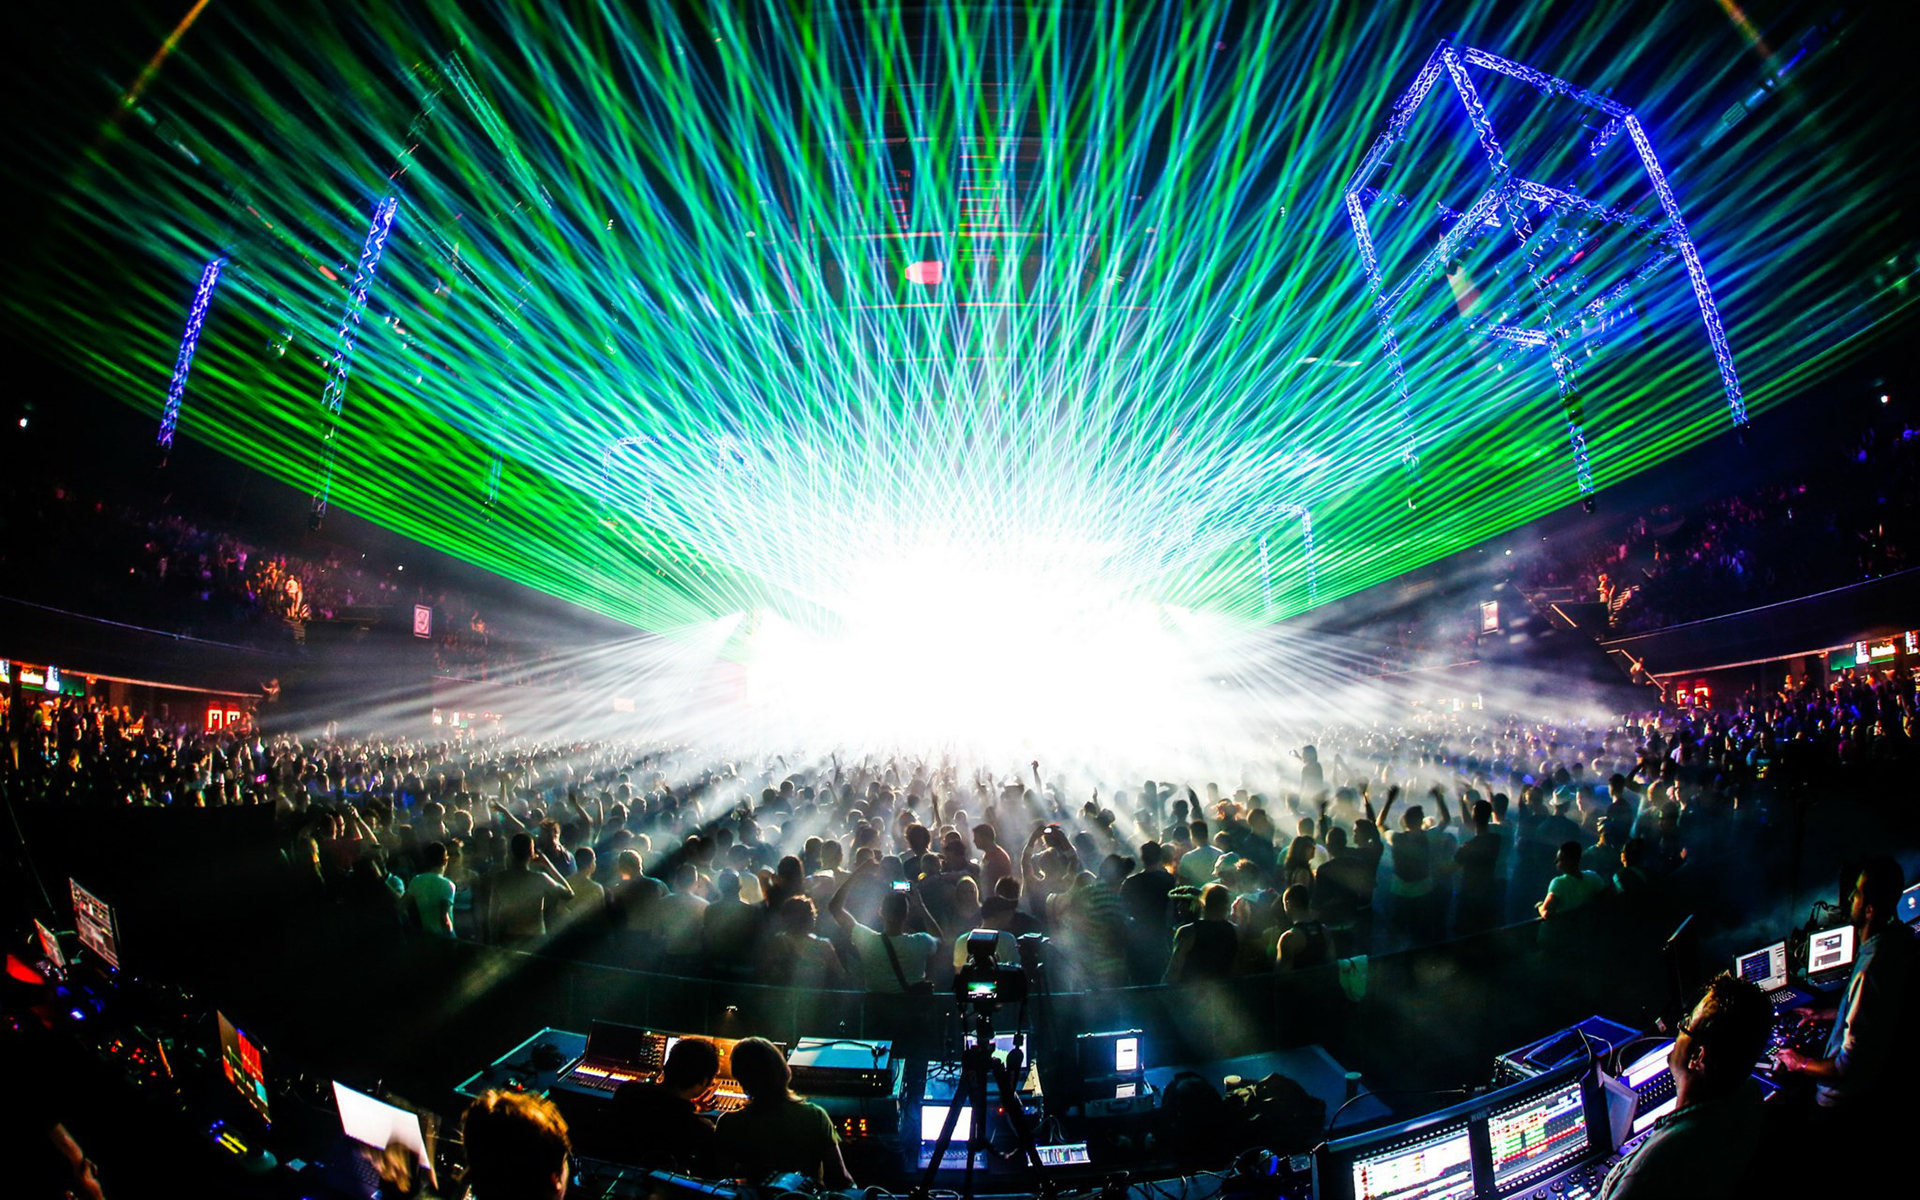 rave, Laser, Concert, Crowd Wallpaper